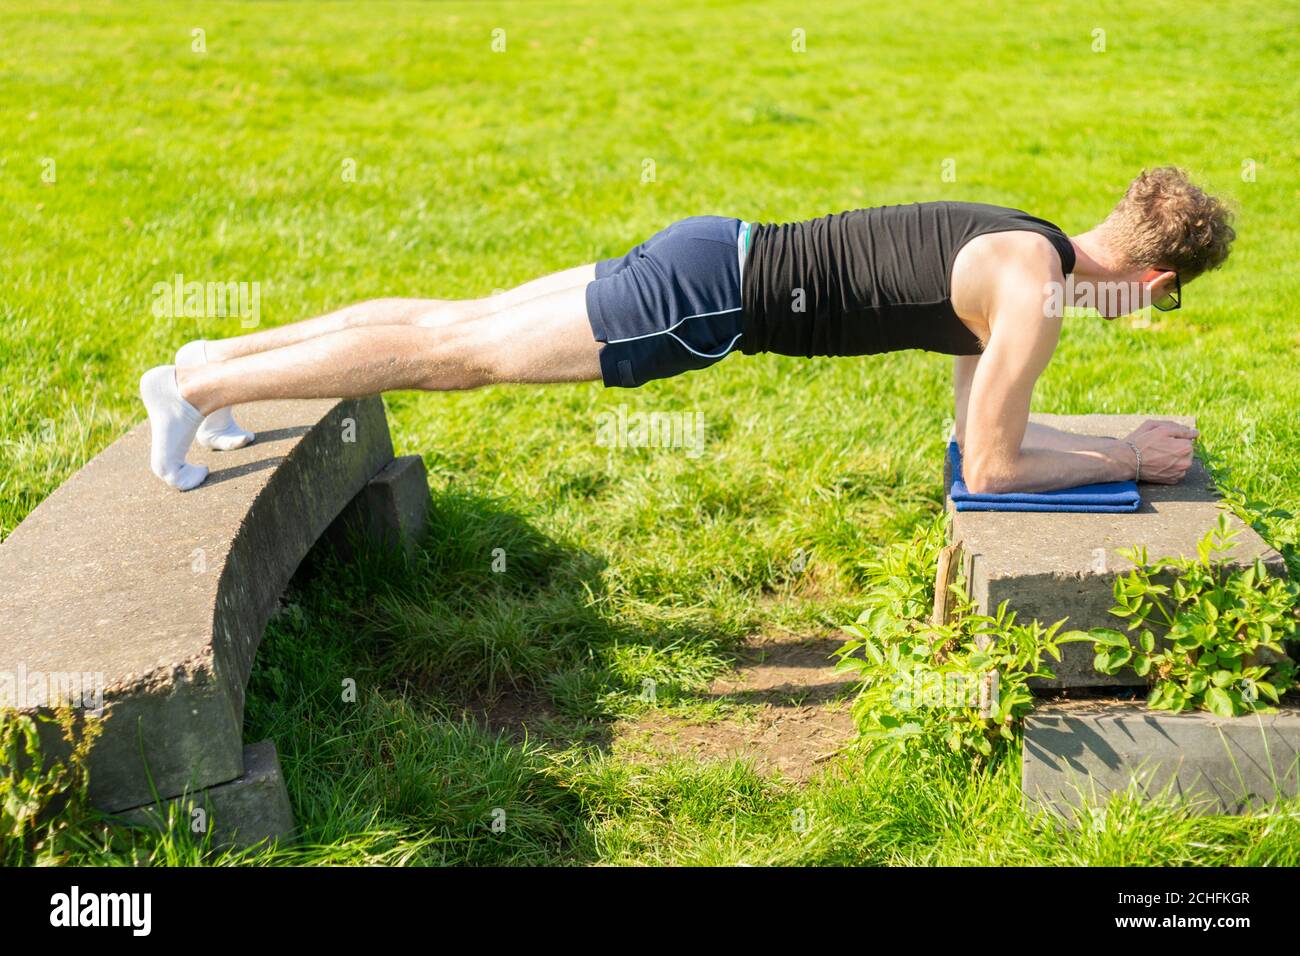 Junger Mann, der Plank-Übung in einer Außenumgebung durchführt. Stärkung der Kernmuskulatur, Bewegung, fit halten, Gesundheit Stockfoto